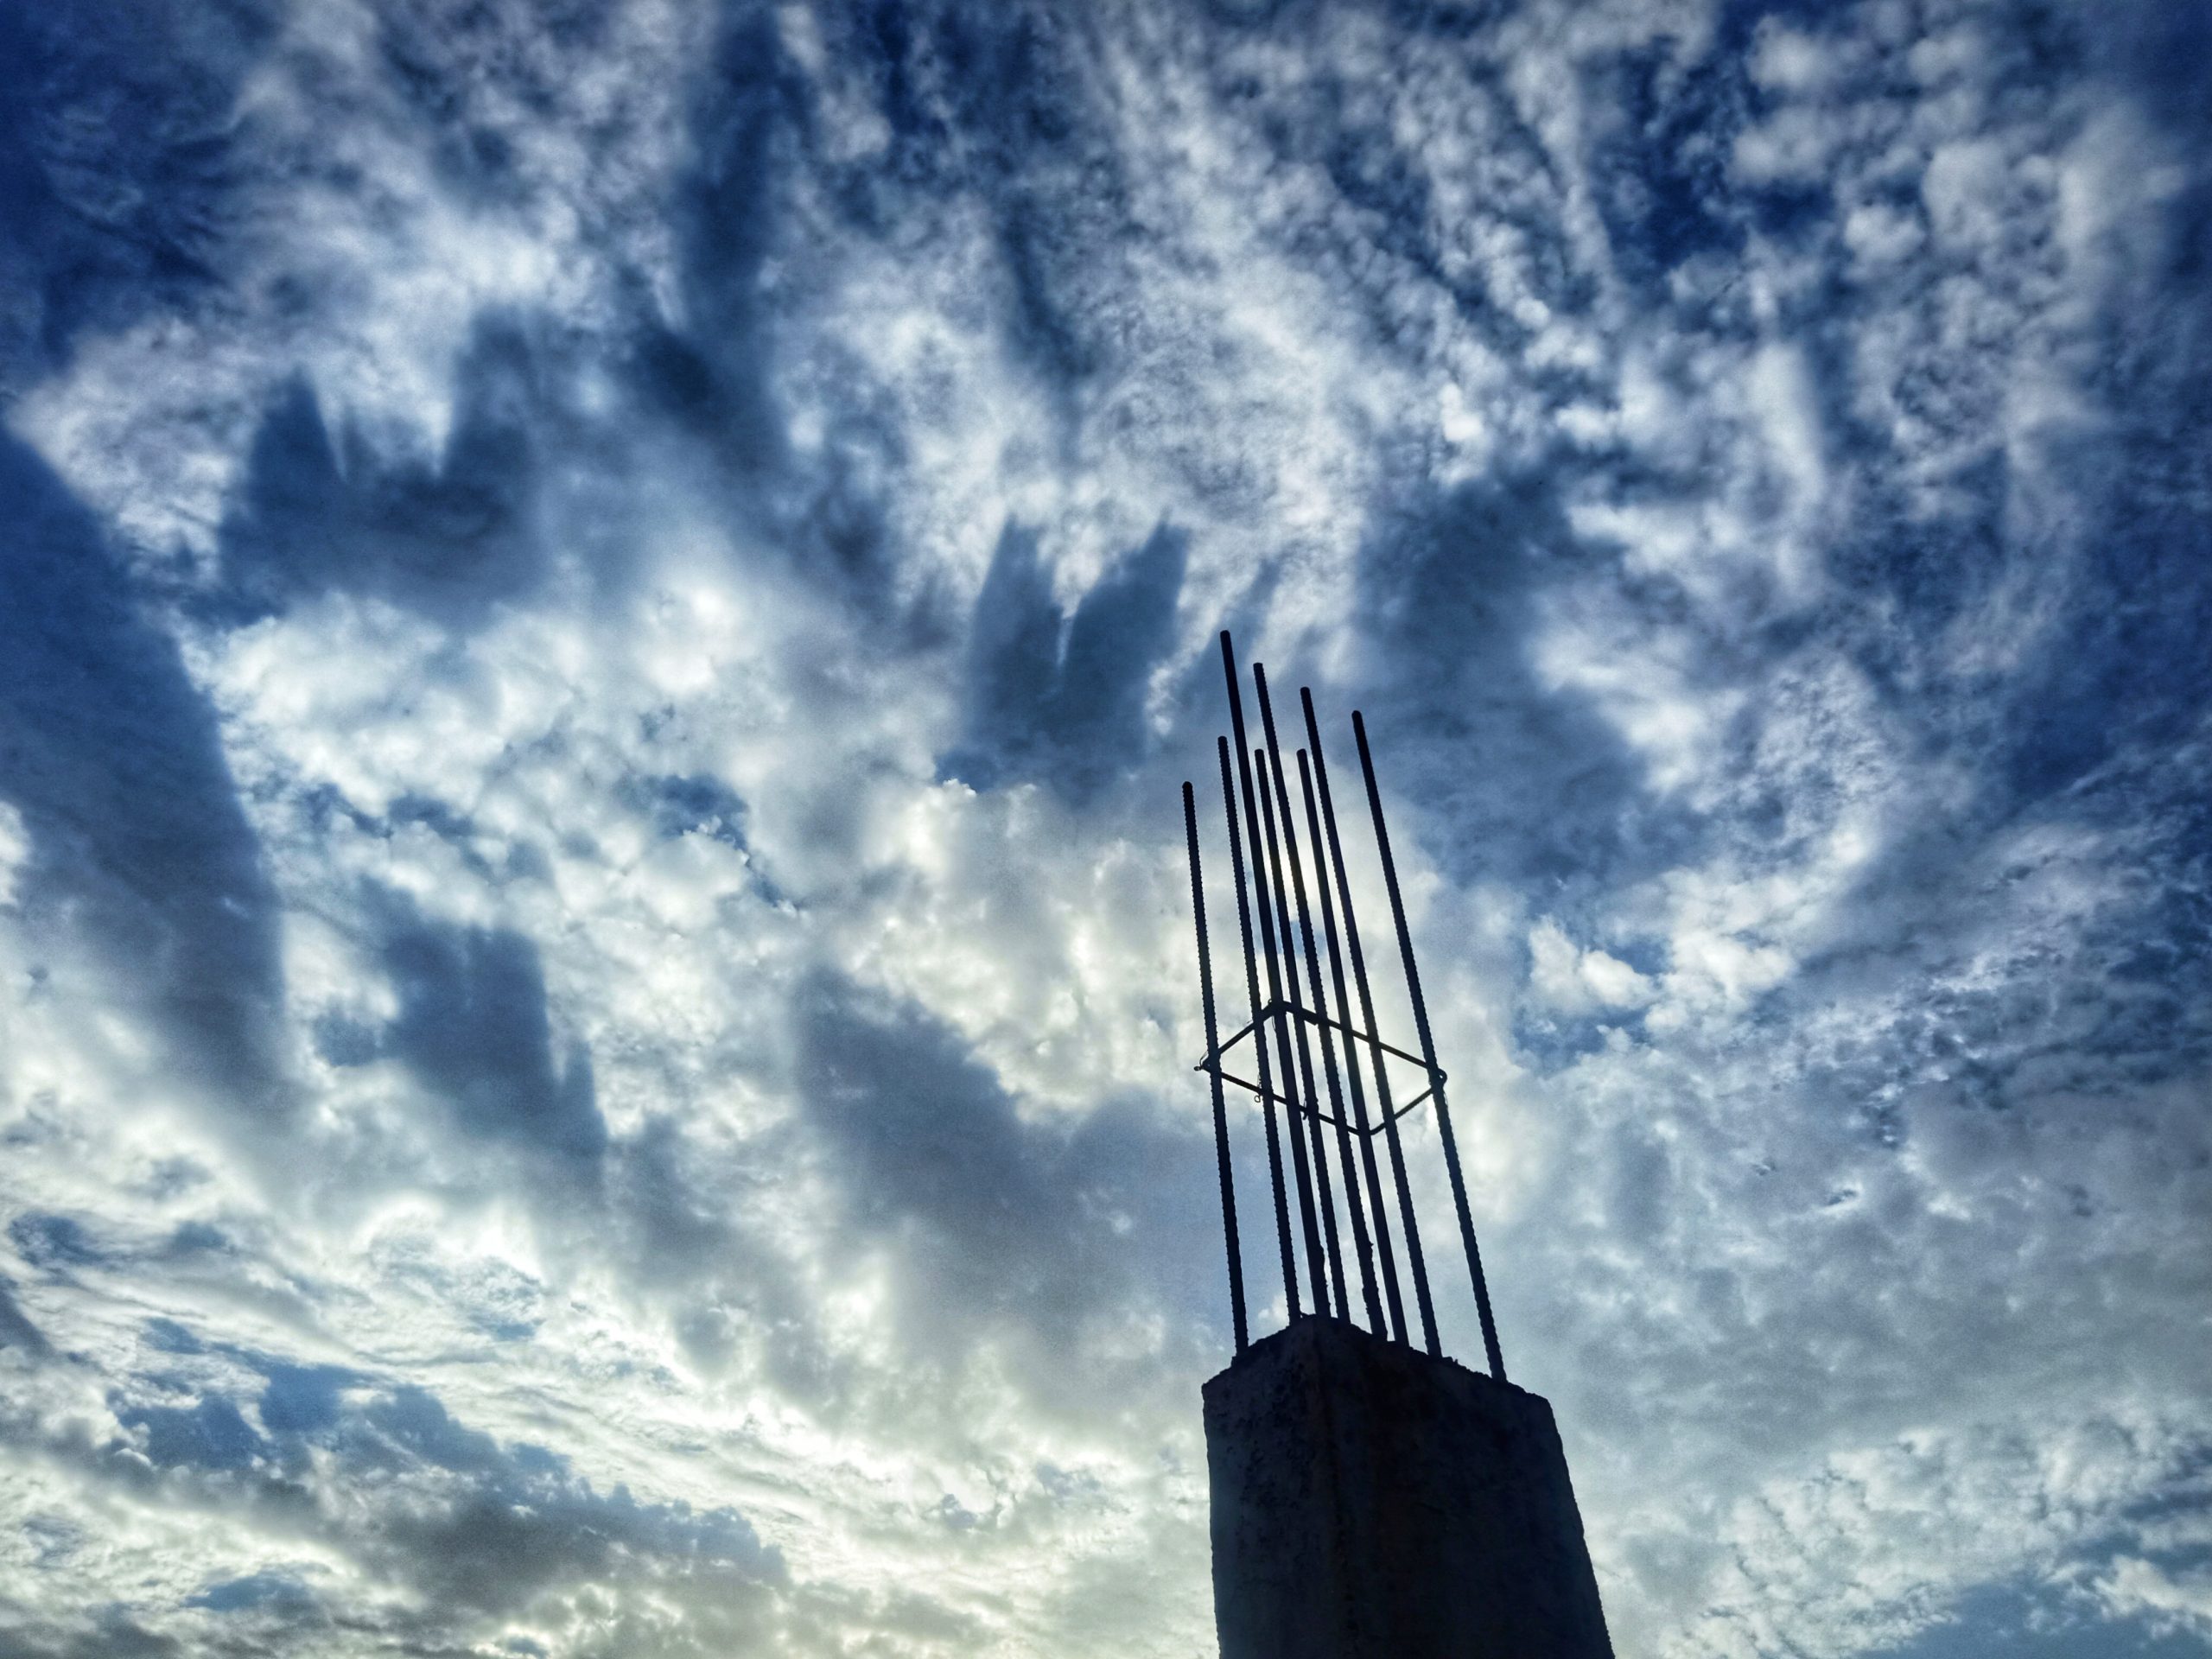 A concrete pillar and sky